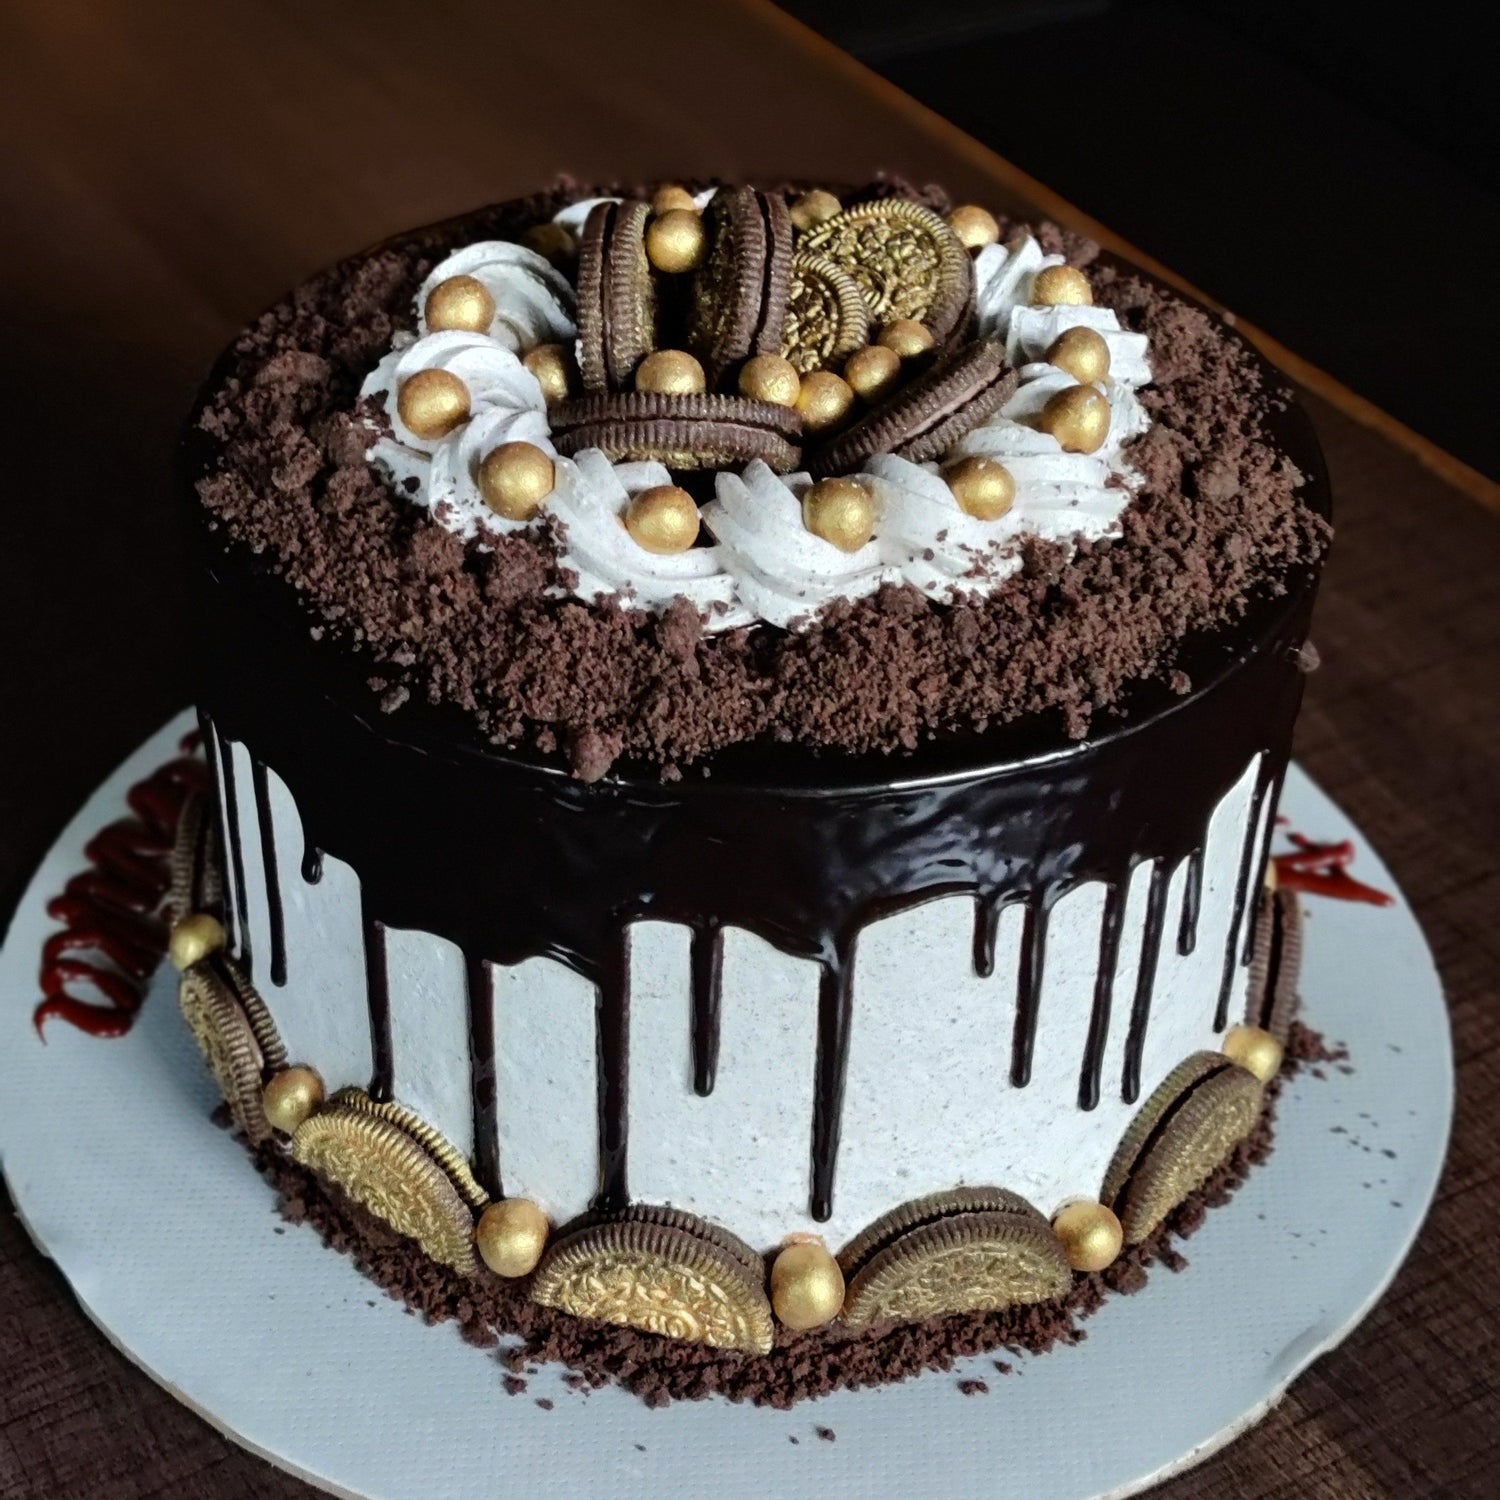 Oreo Model cake Hotoven Bakers